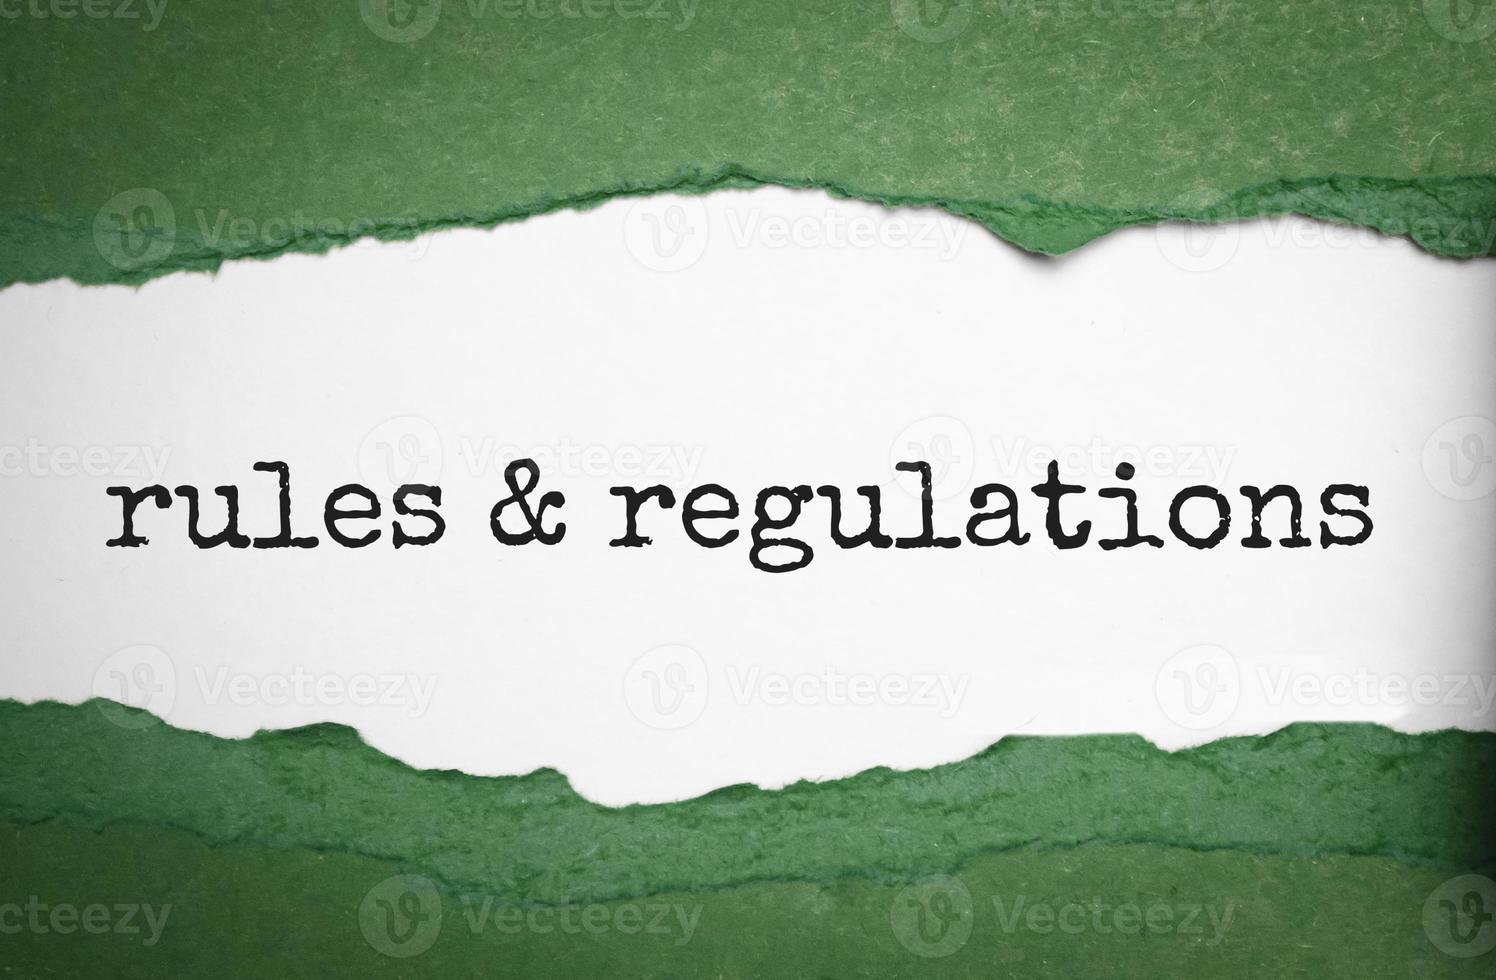 palabra de reglas y regulaciones bajo papel verde rasgado foto